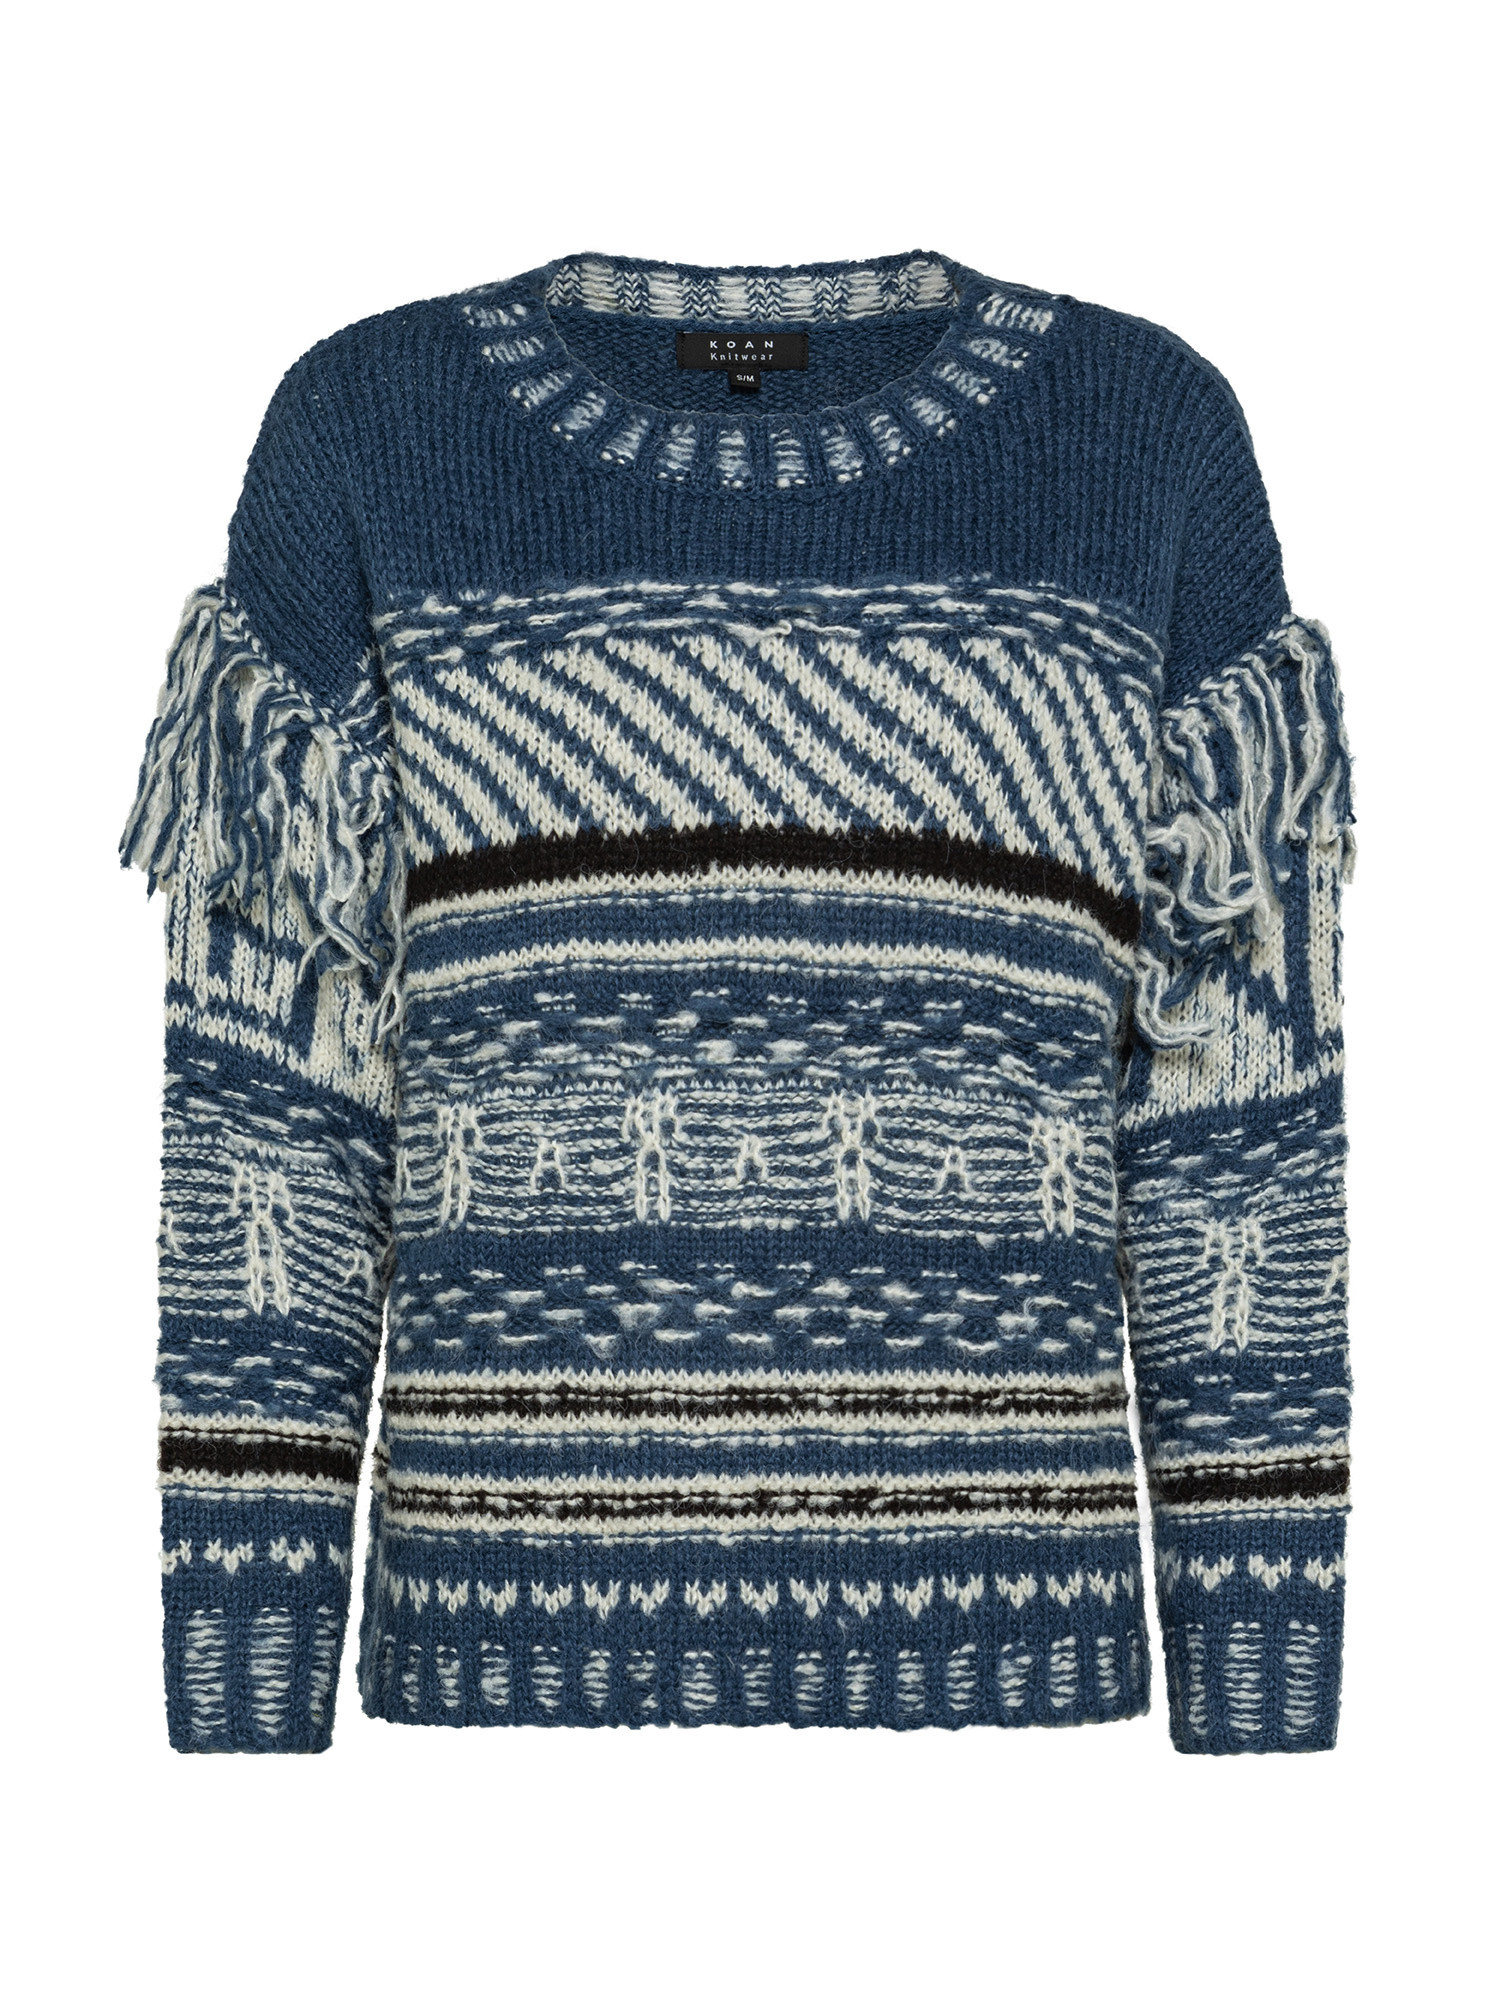 Koan Collection свитер с круглым вырезом в этническом стиле, бледно-синий пуловер с круглым вырезом из трикотажа с витым узором